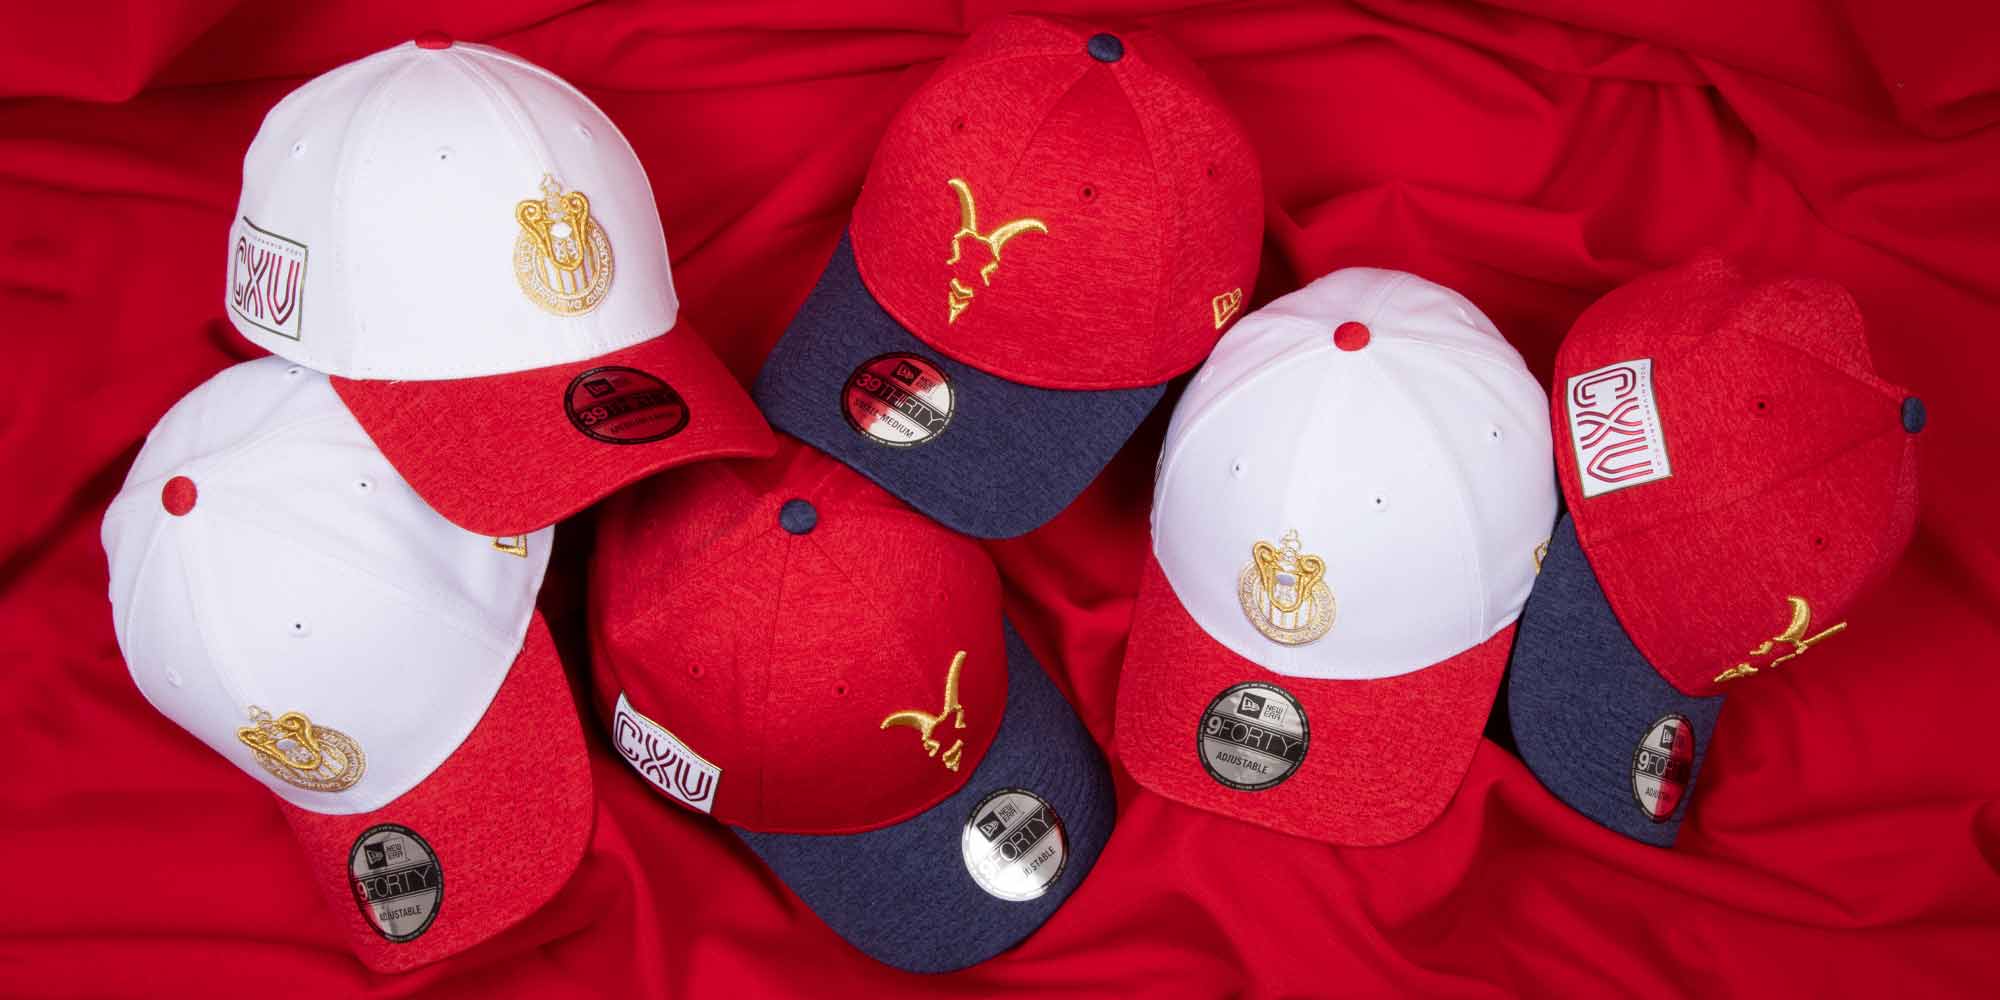 Chivas no deja de celebrar sus 115 años de historia, ahora con la nueva colección de gorras New Era, conmemorativas por dicho aniversario.